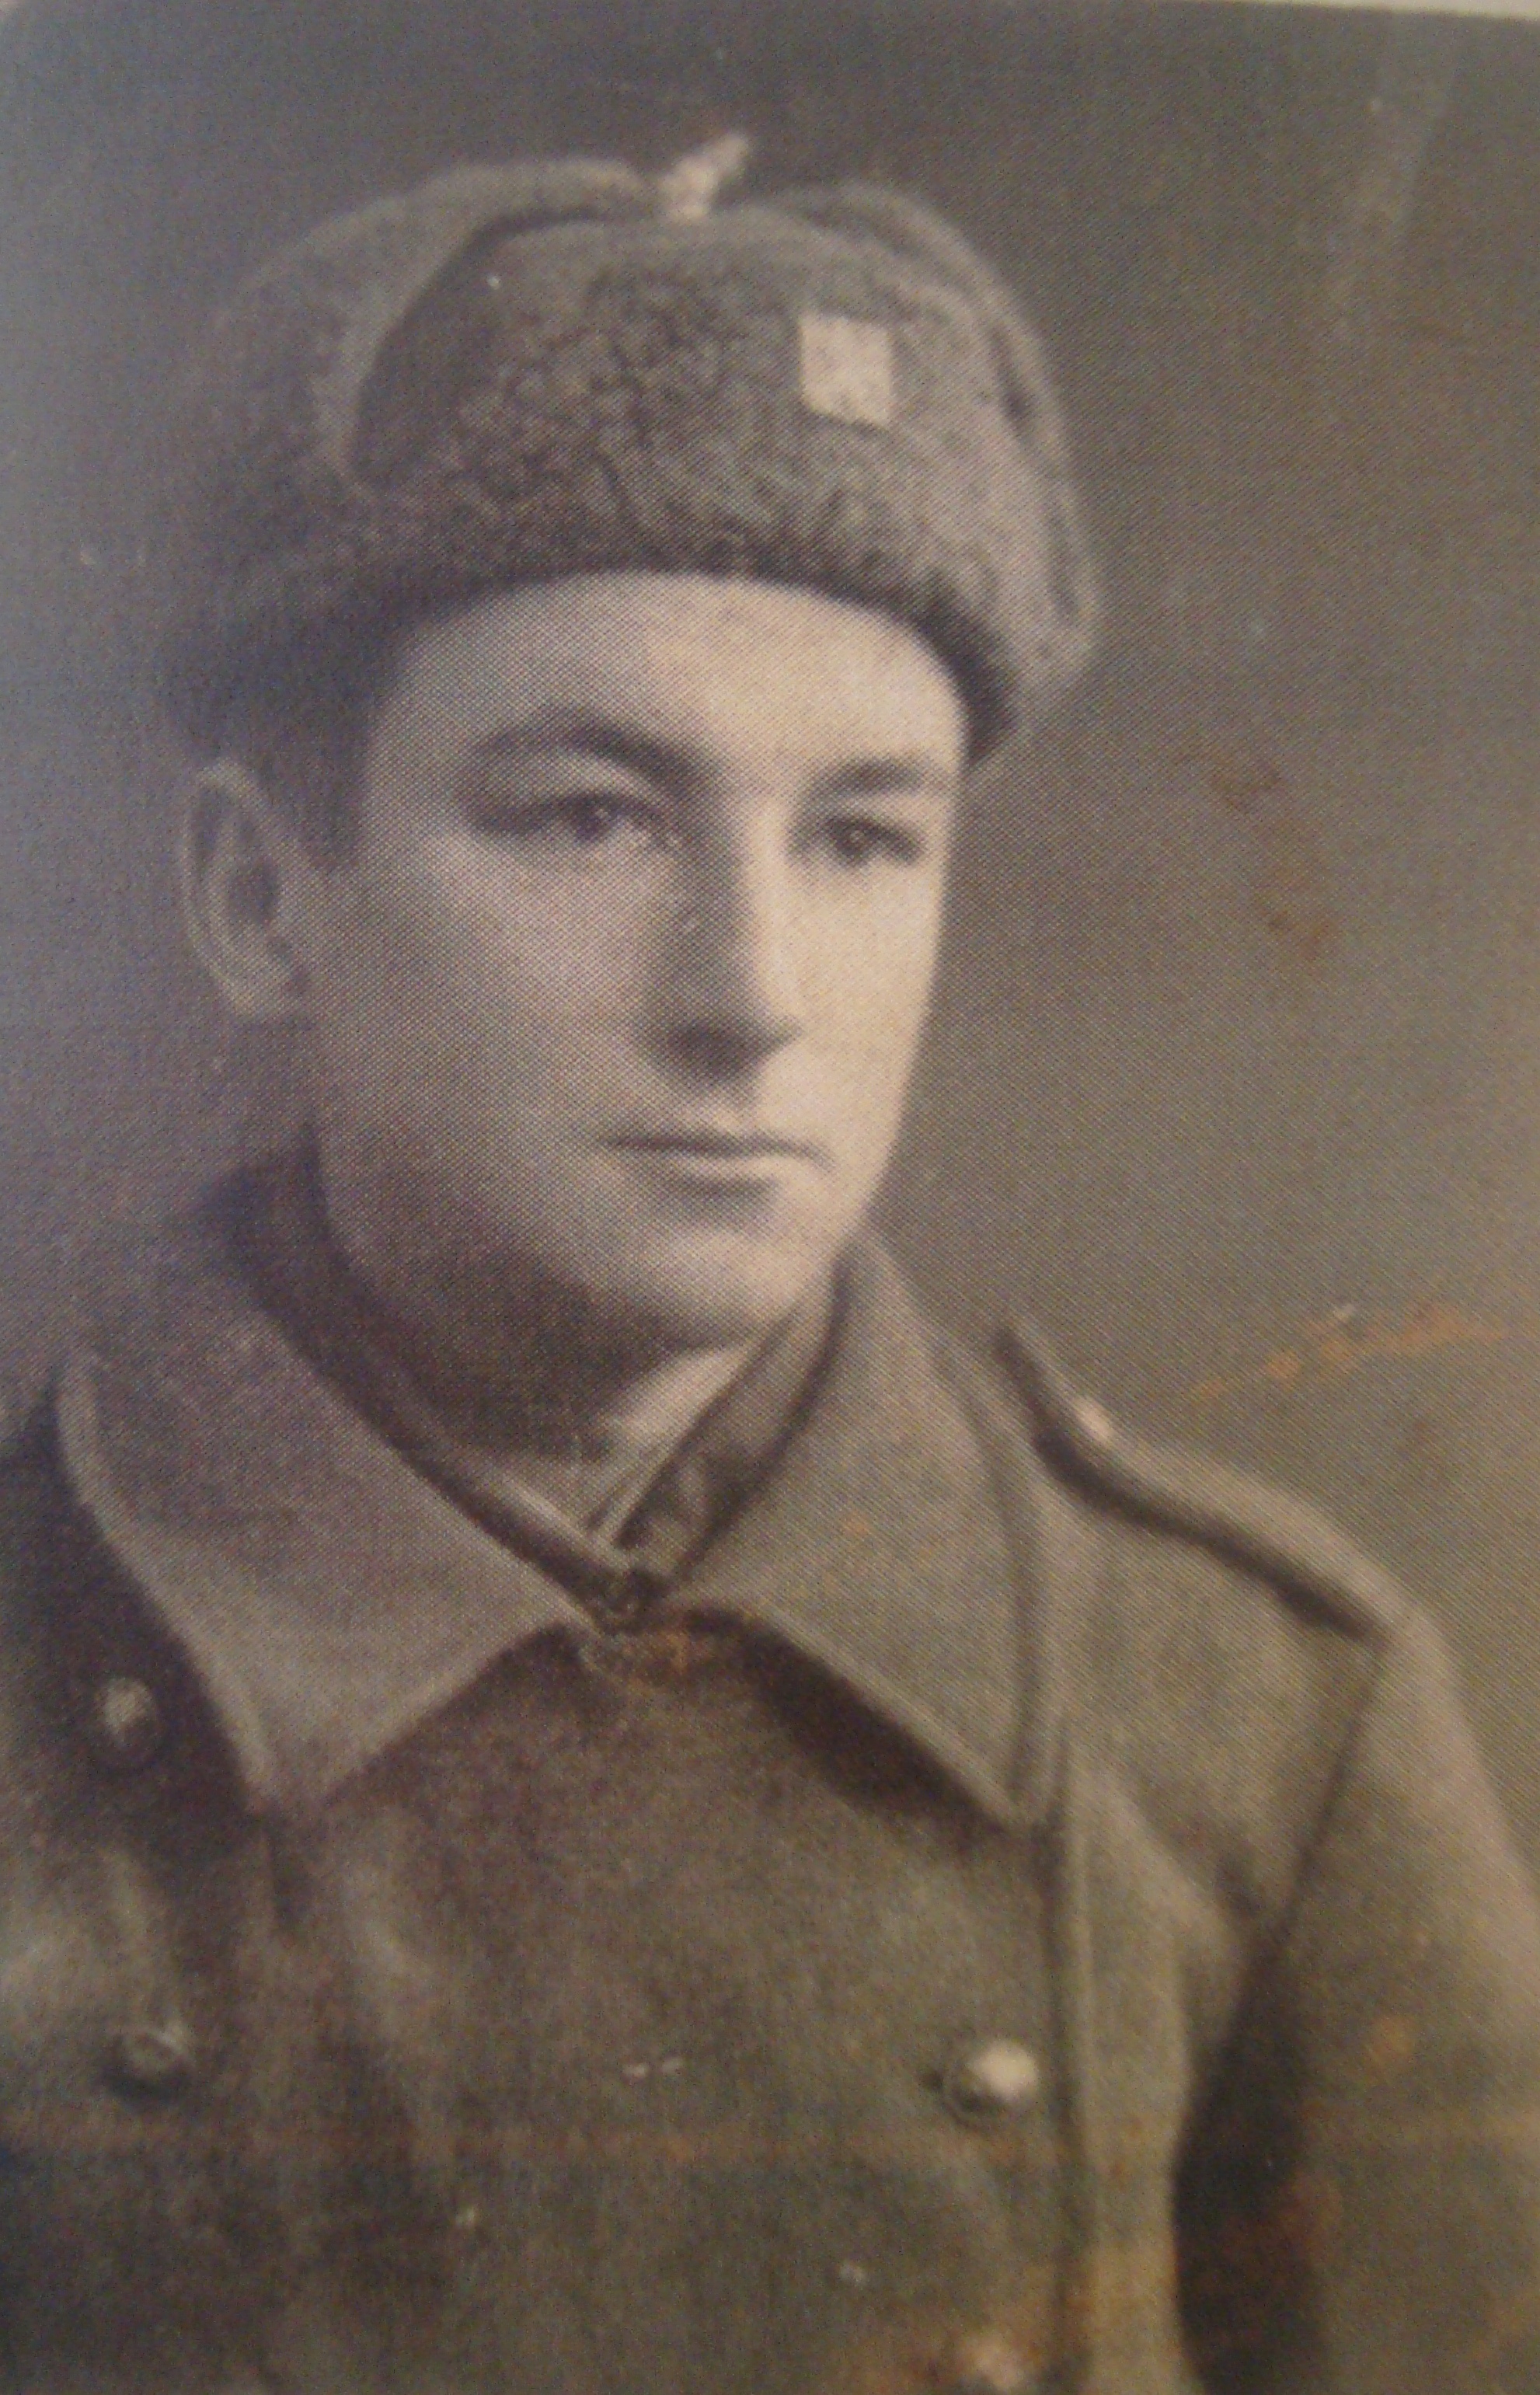 Václav Valoušek, shortly after joining the army in 1944